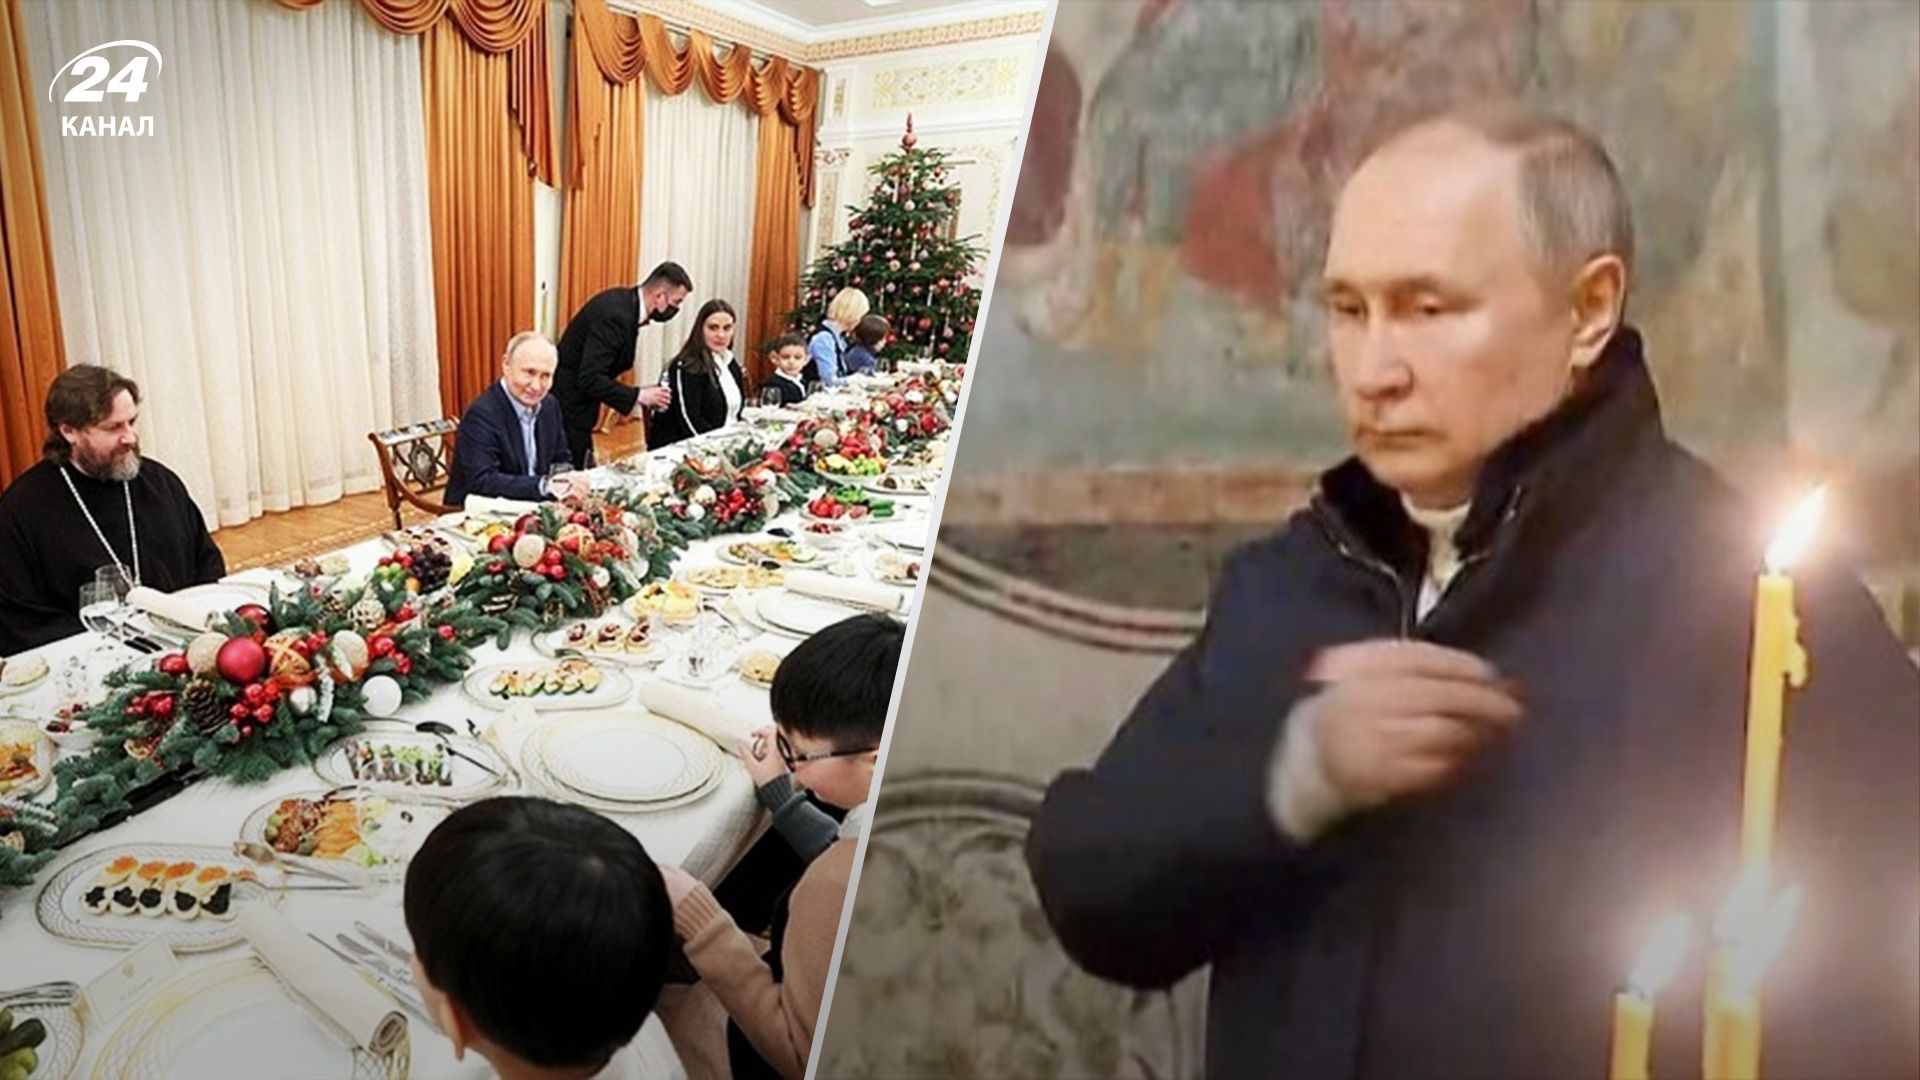 Путін цинічно святкував Різдво з вдовами - Асланян про деталі зустрічі - 24 Канал